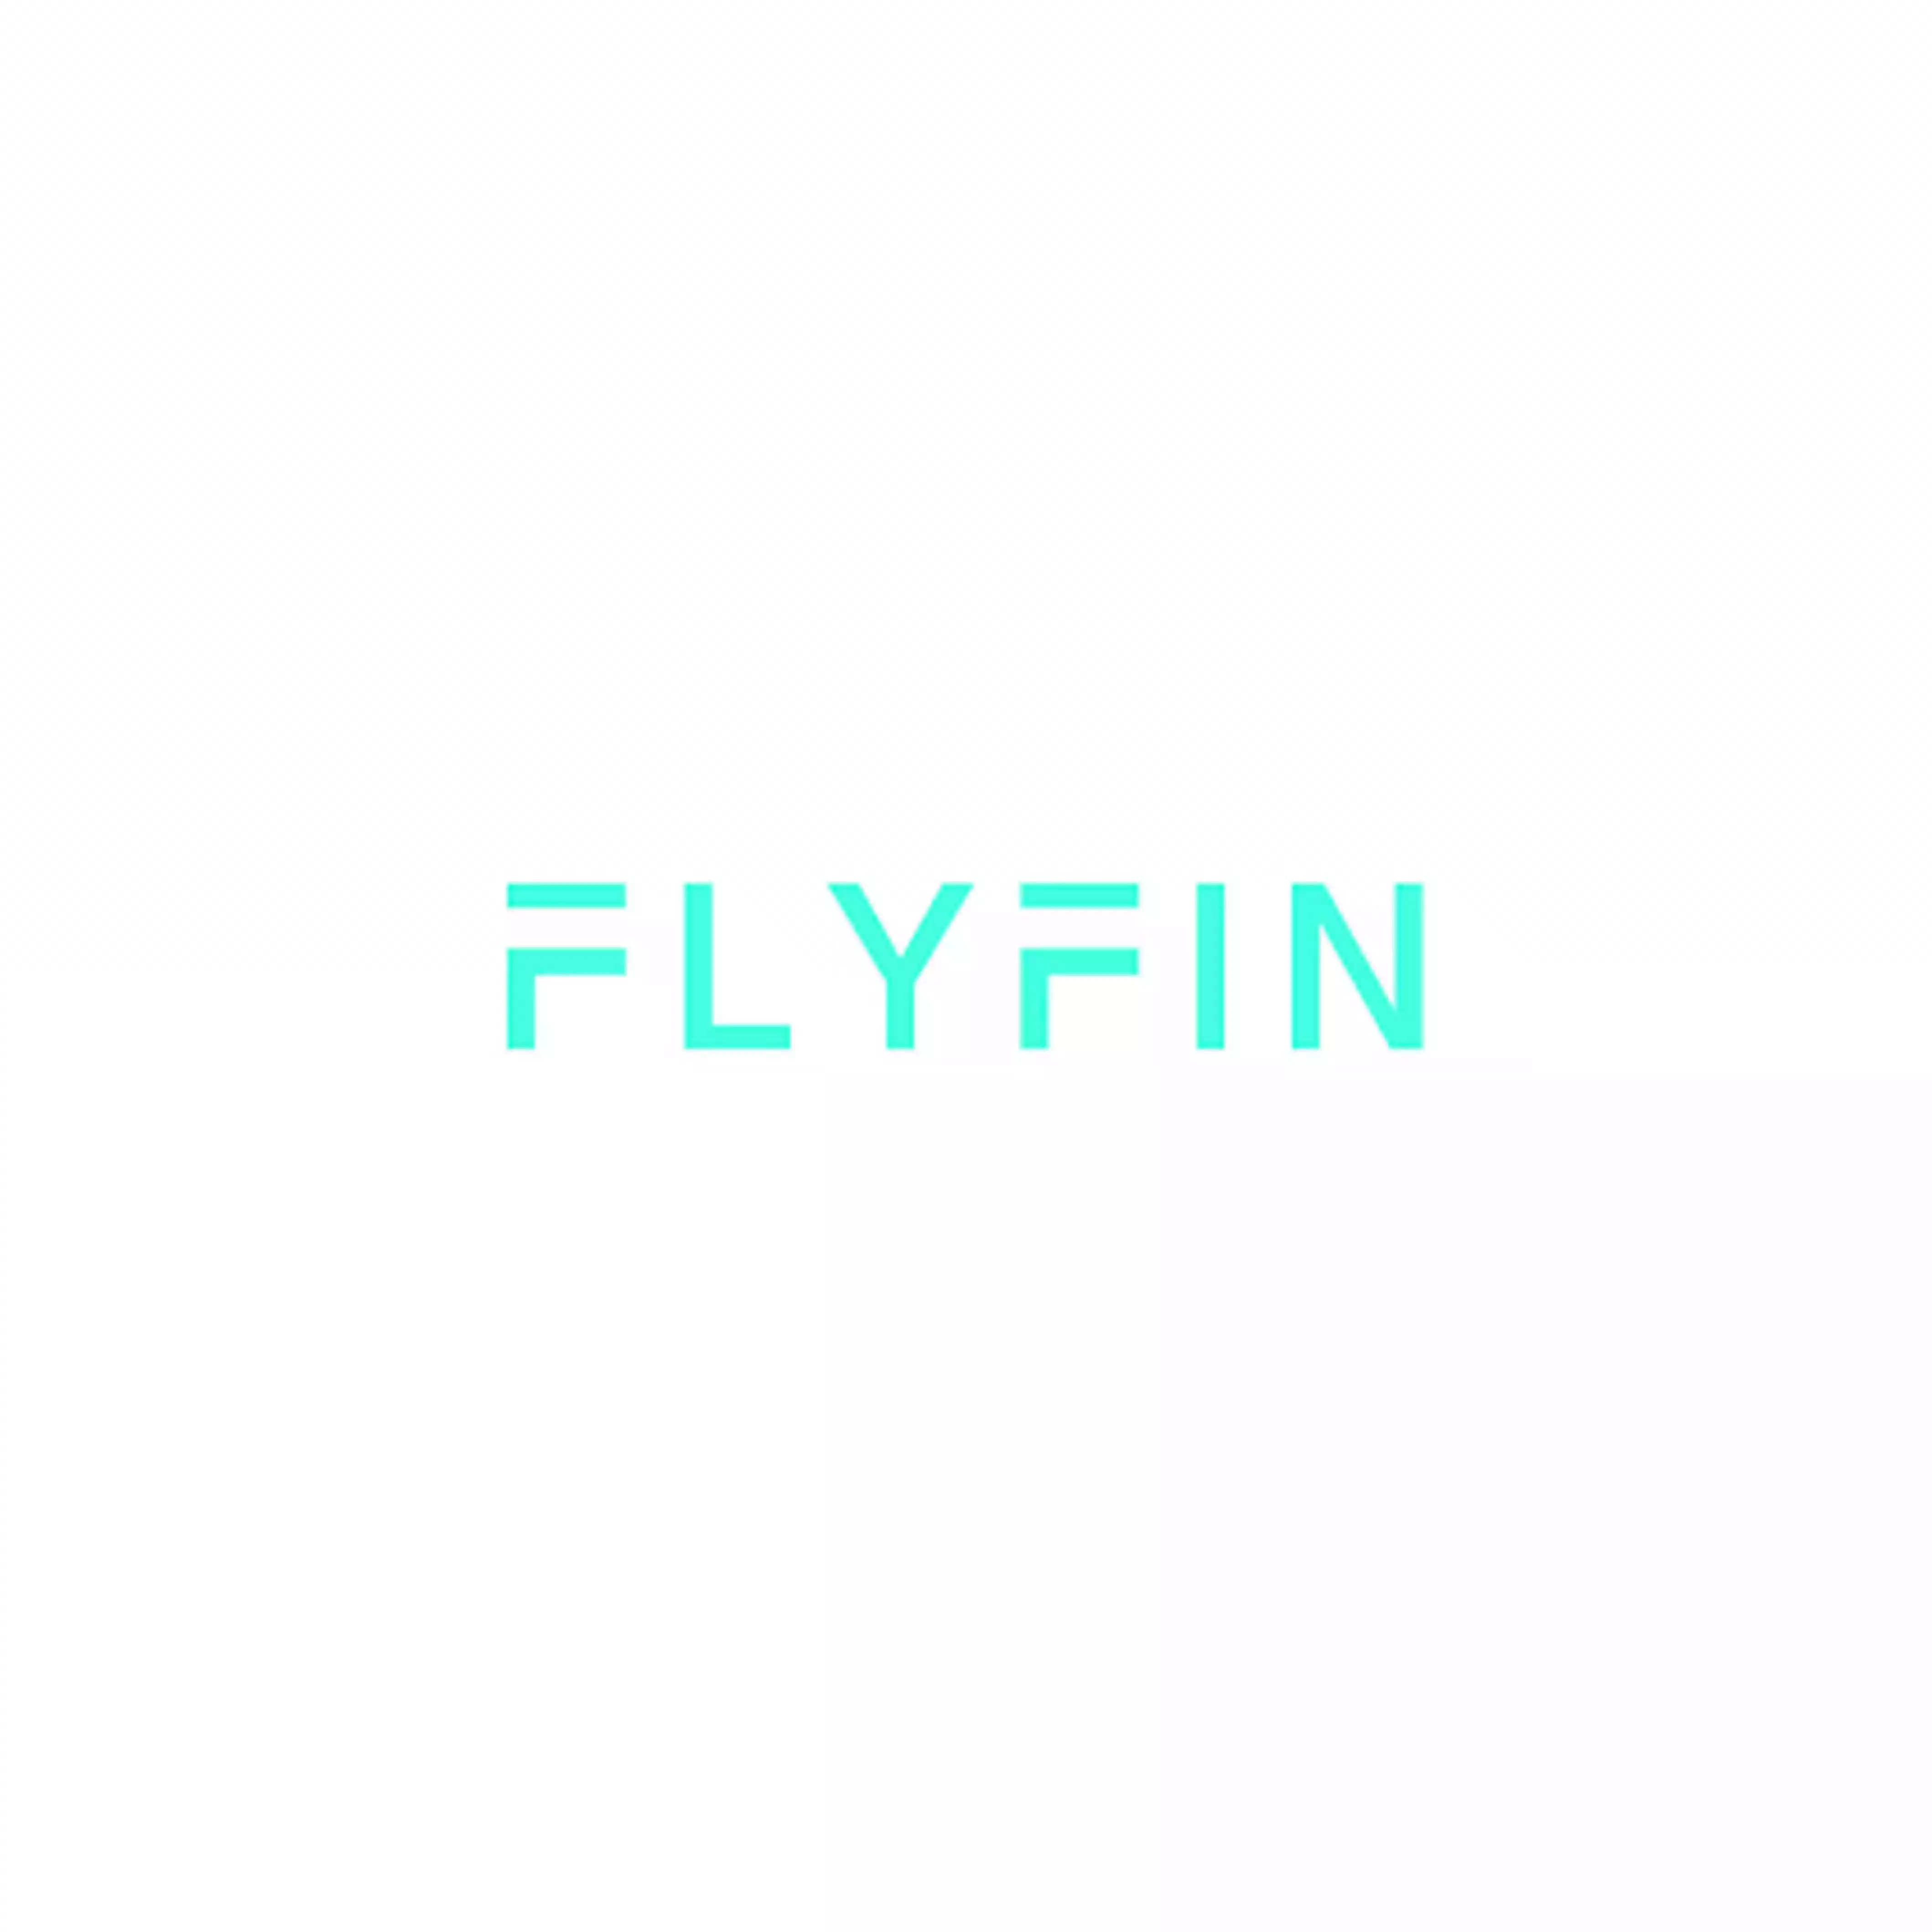 FlyFin